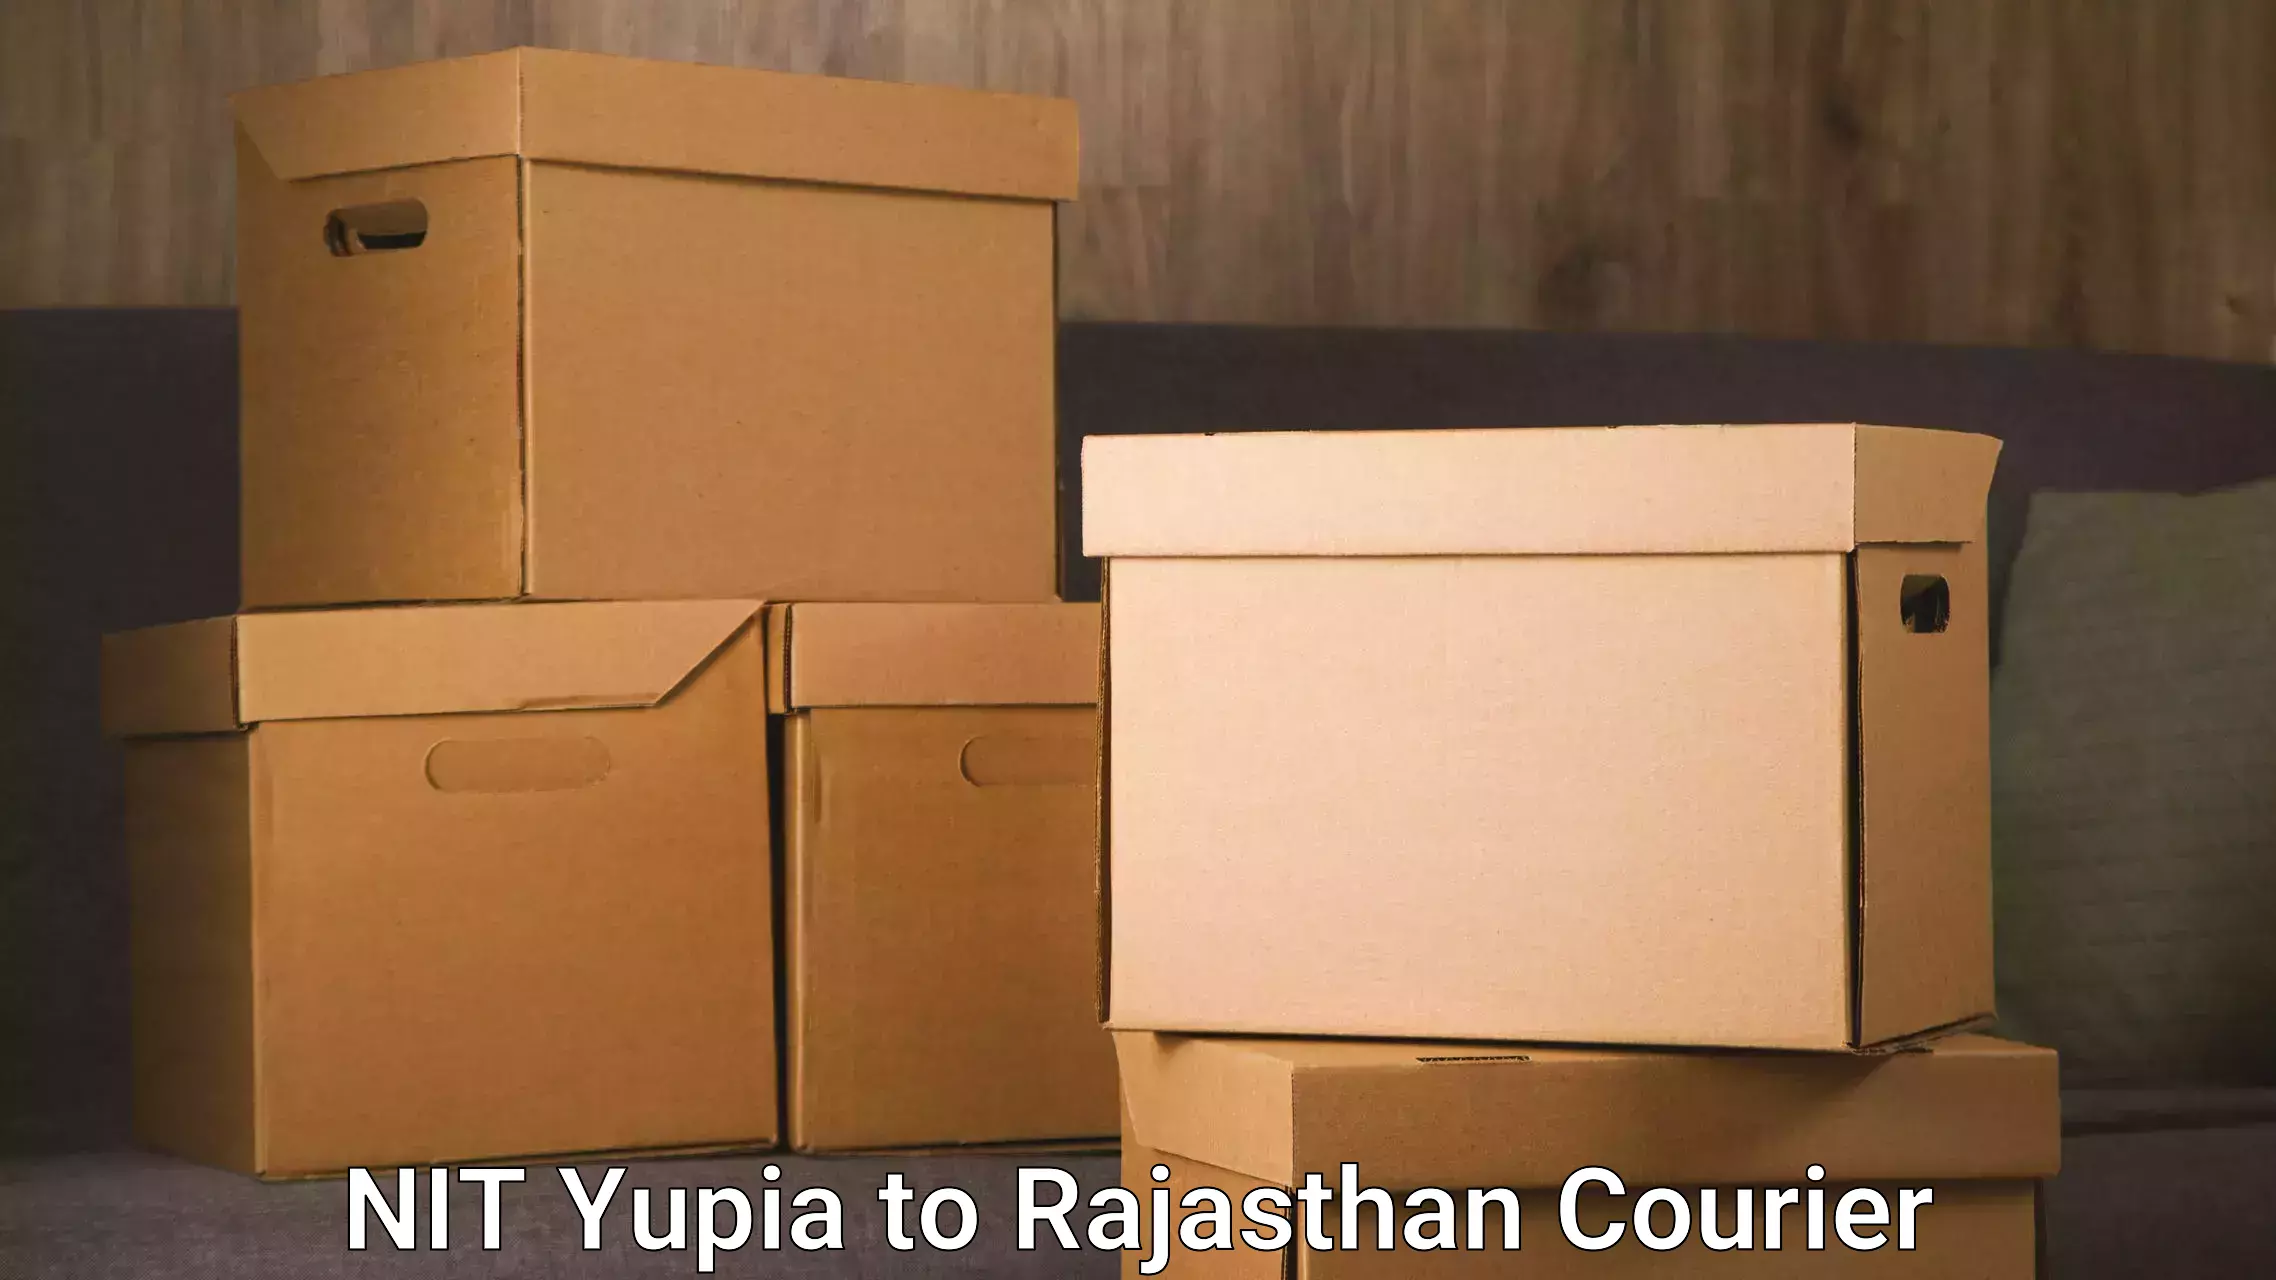 Urgent courier needs NIT Yupia to Nasirabad